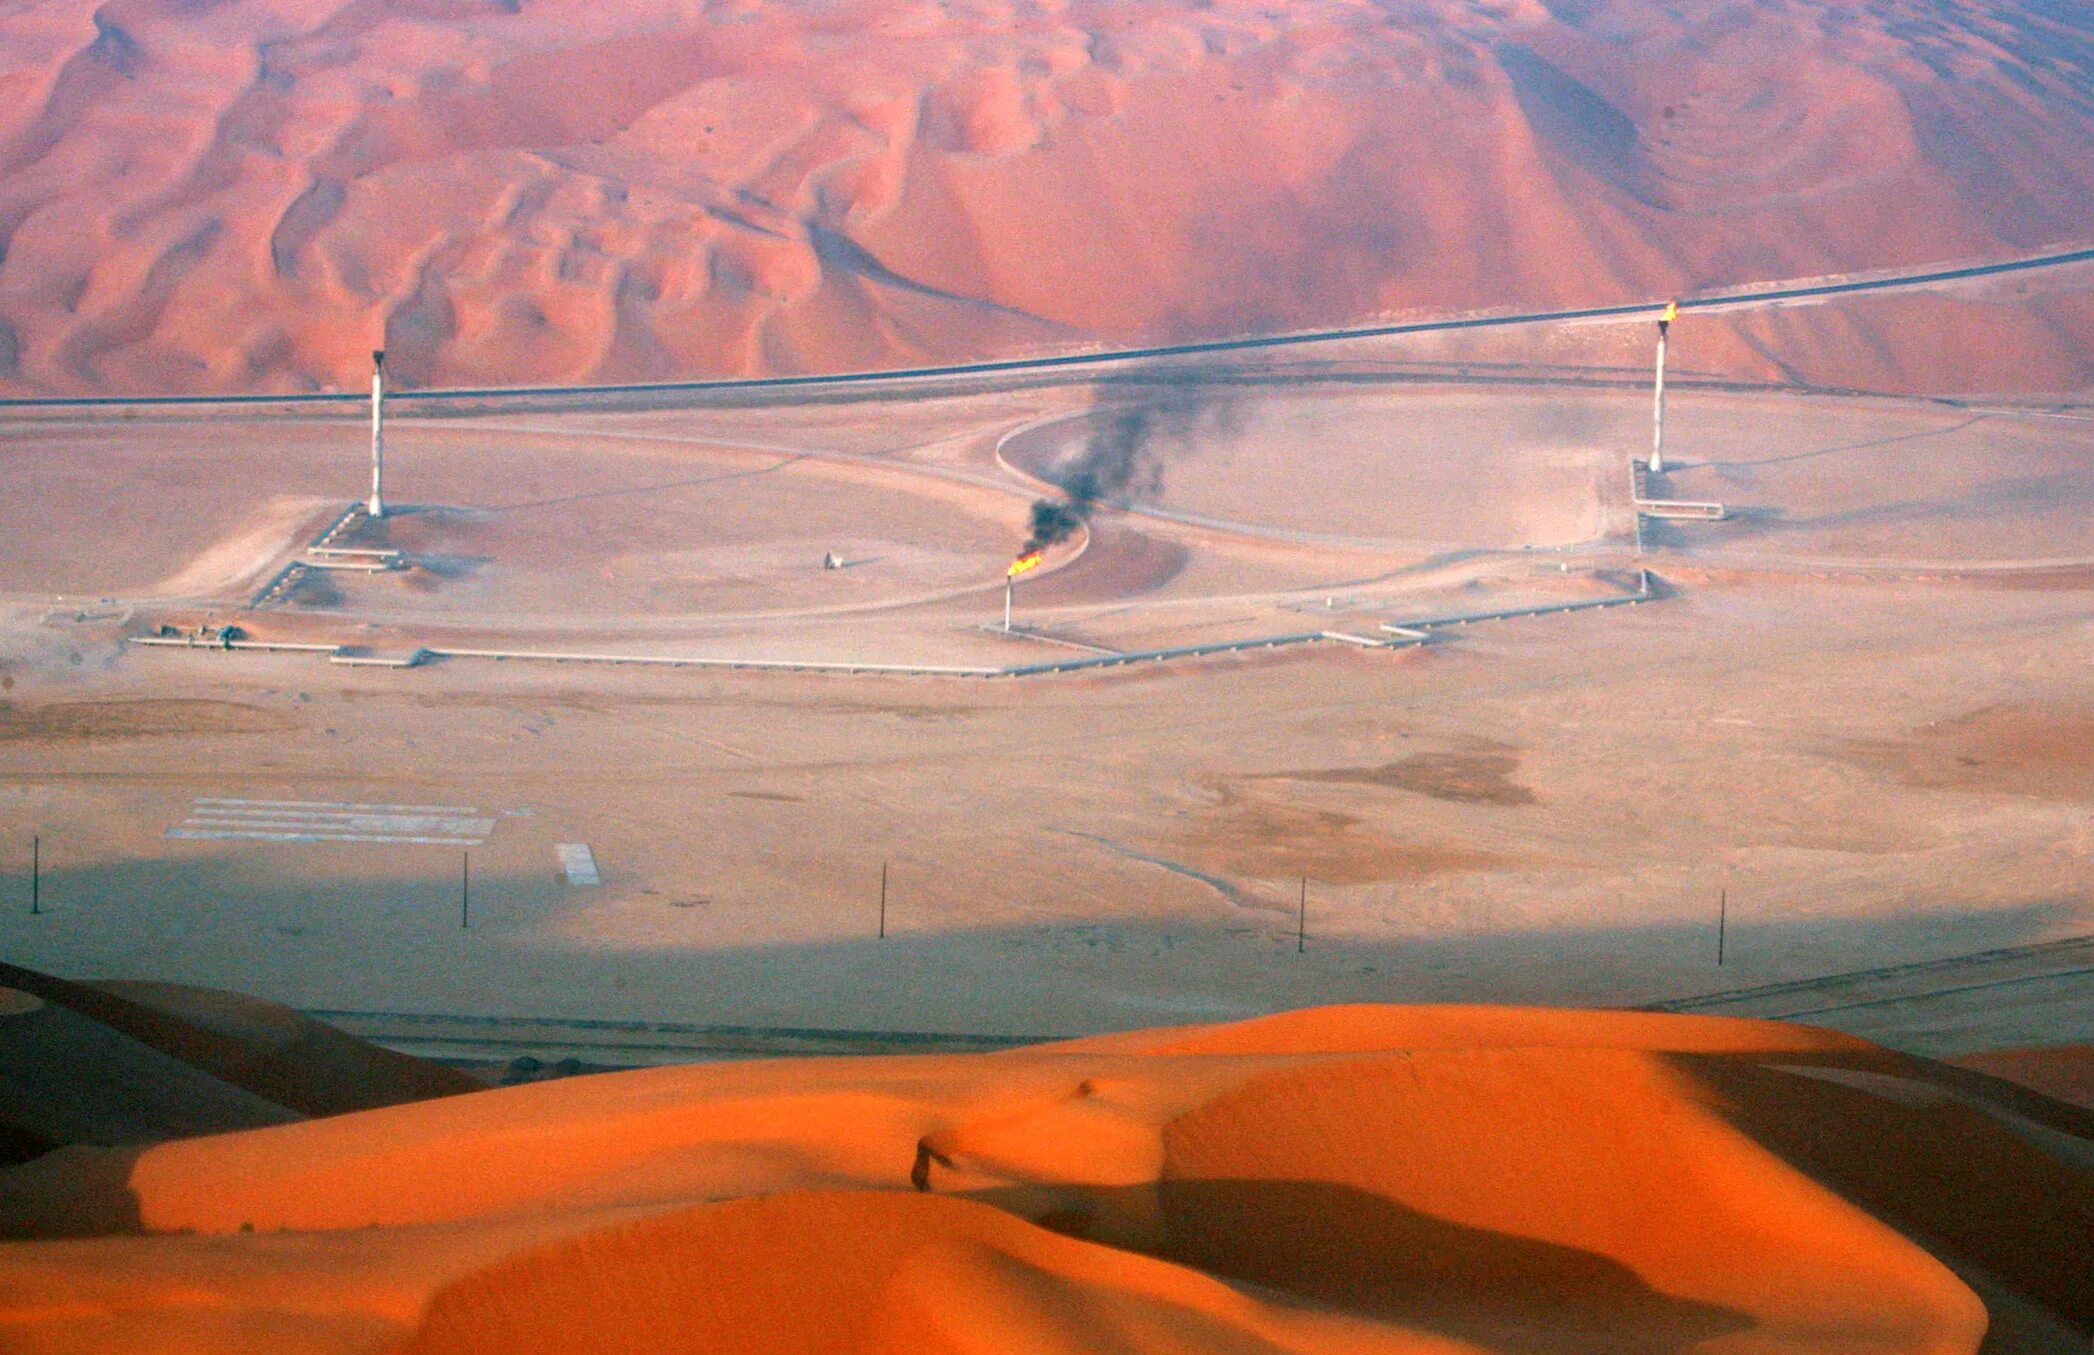 Саудовская Аравия море. Саудовская Аравия природа. Аравия пустыня нефть. Добыча нефти в Саудовской Аравии. География саудовской аравии